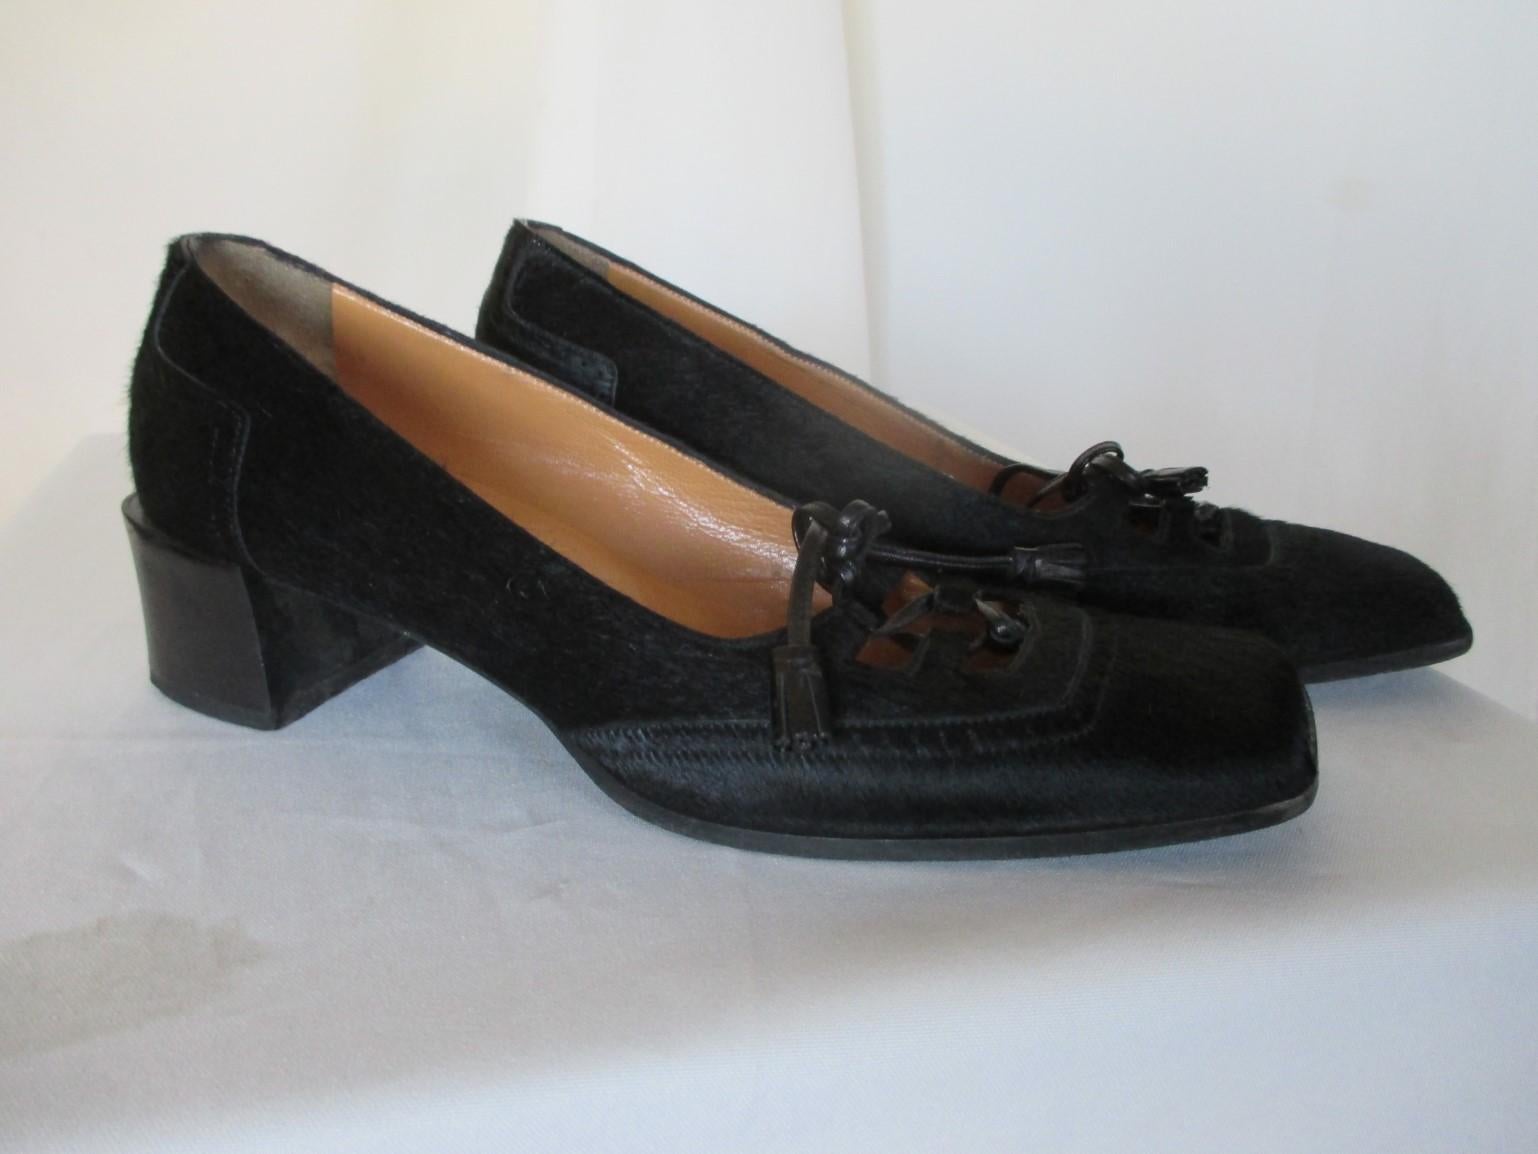 Ces chaussures sont fabriquées en cuir de veau/peau de poney noir par la maison Hermès.
La doublure est en cuir très souple.
Le talon a une hauteur d'environ 4,5 cm (1,77).
En état d'usage.
taille EU 36.5

Veuillez noter que les articles vintage ne